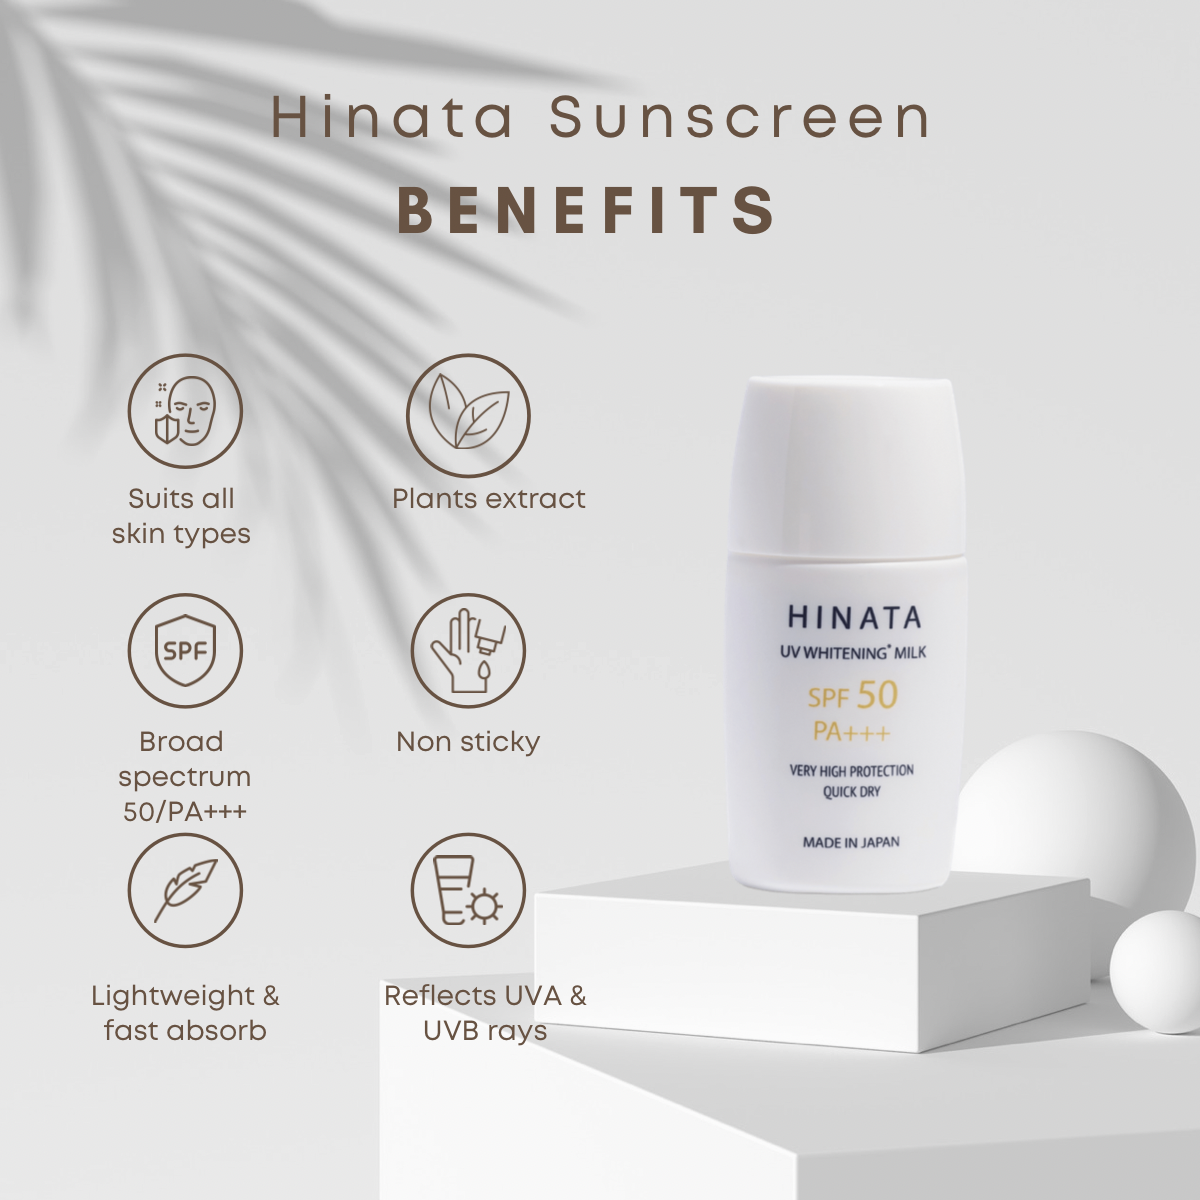 3. HINATA UV Whitening Milk: Medicated Sunscreen